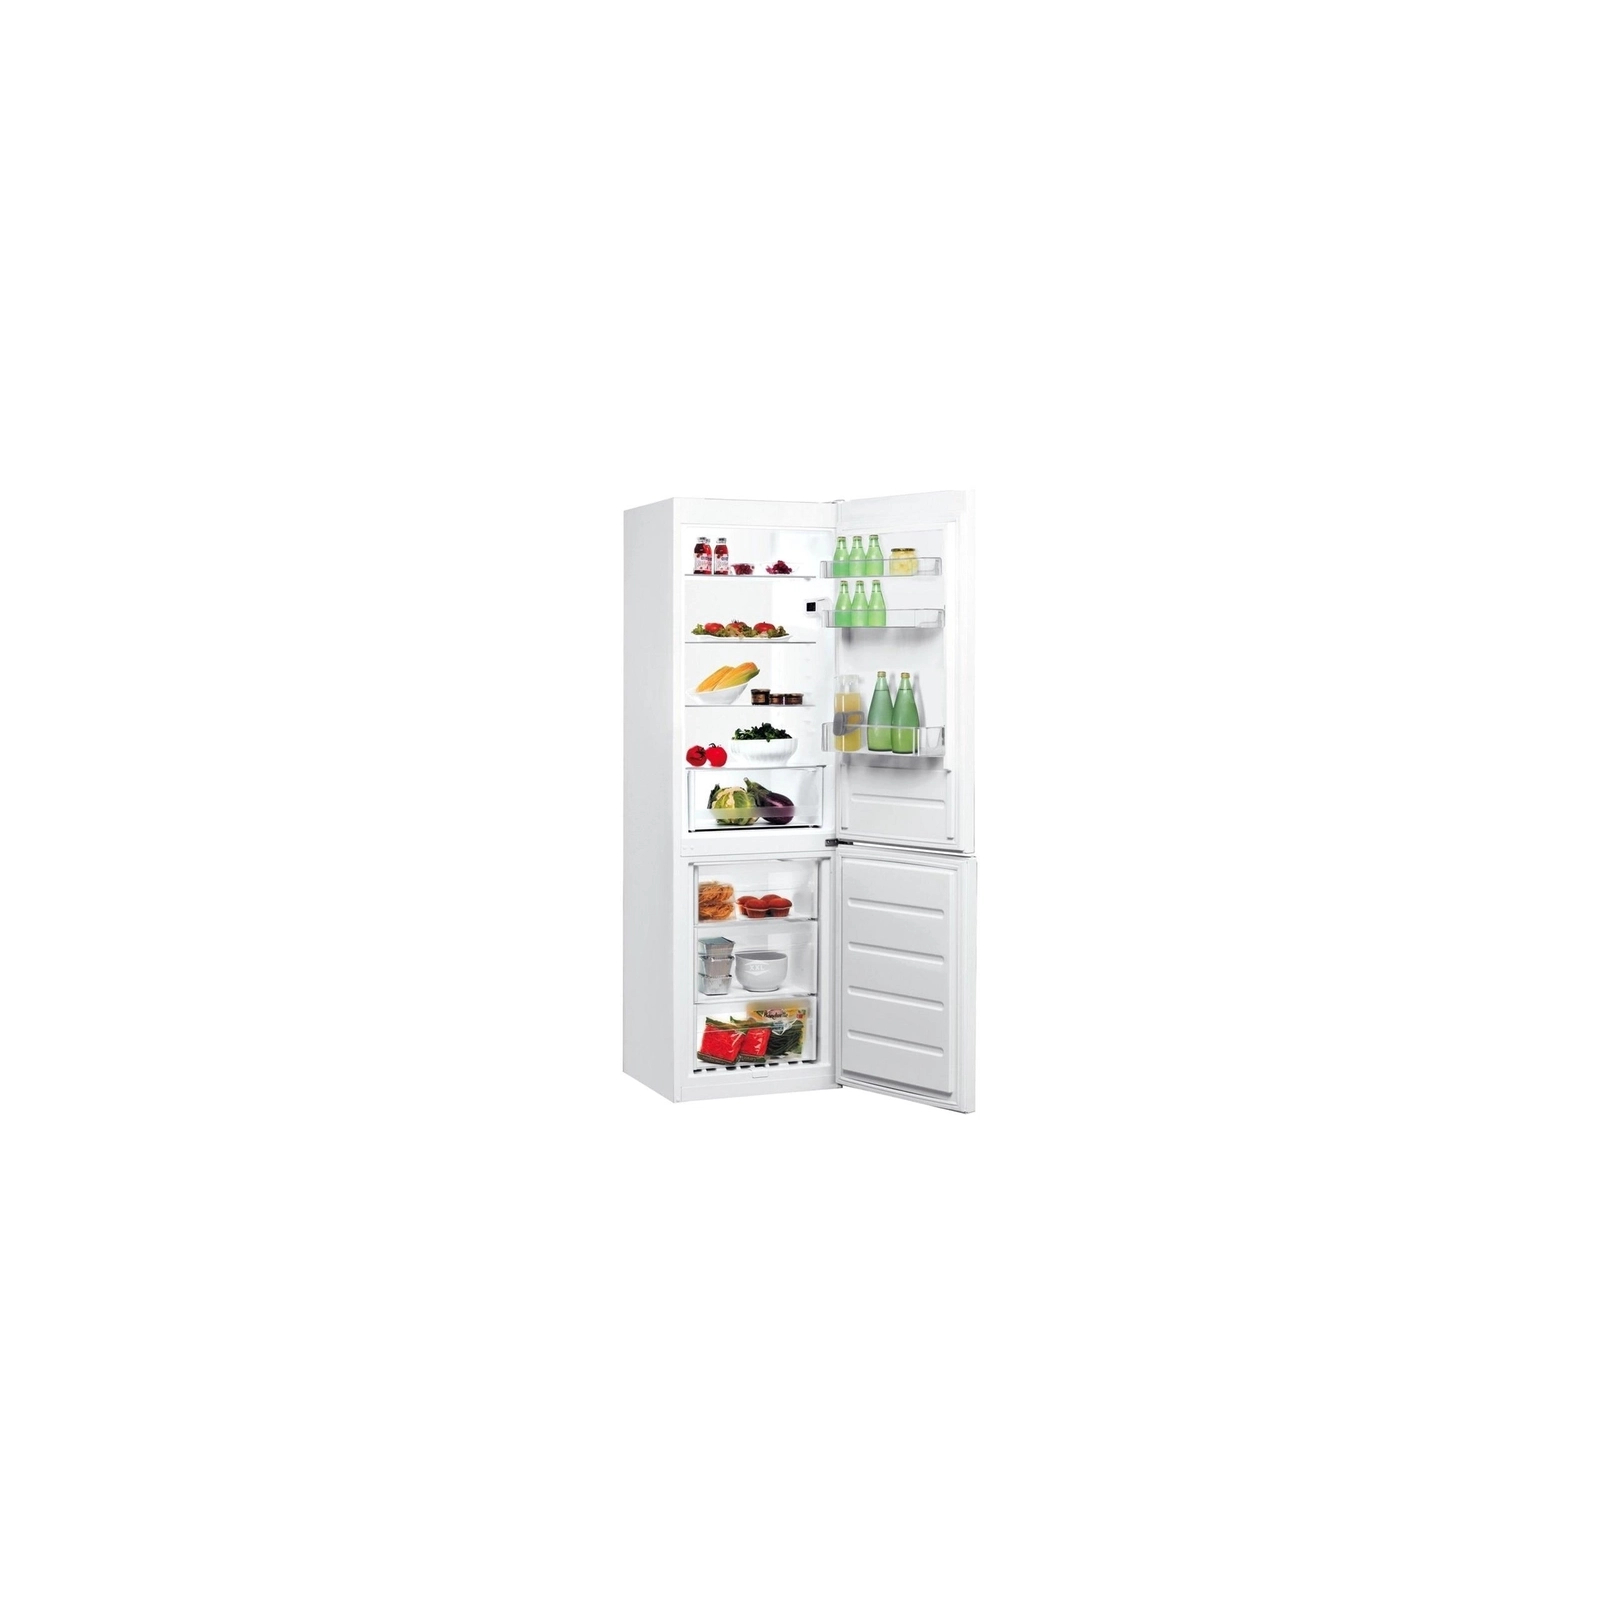 Холодильник Indesit LI8S1EW изображение 2